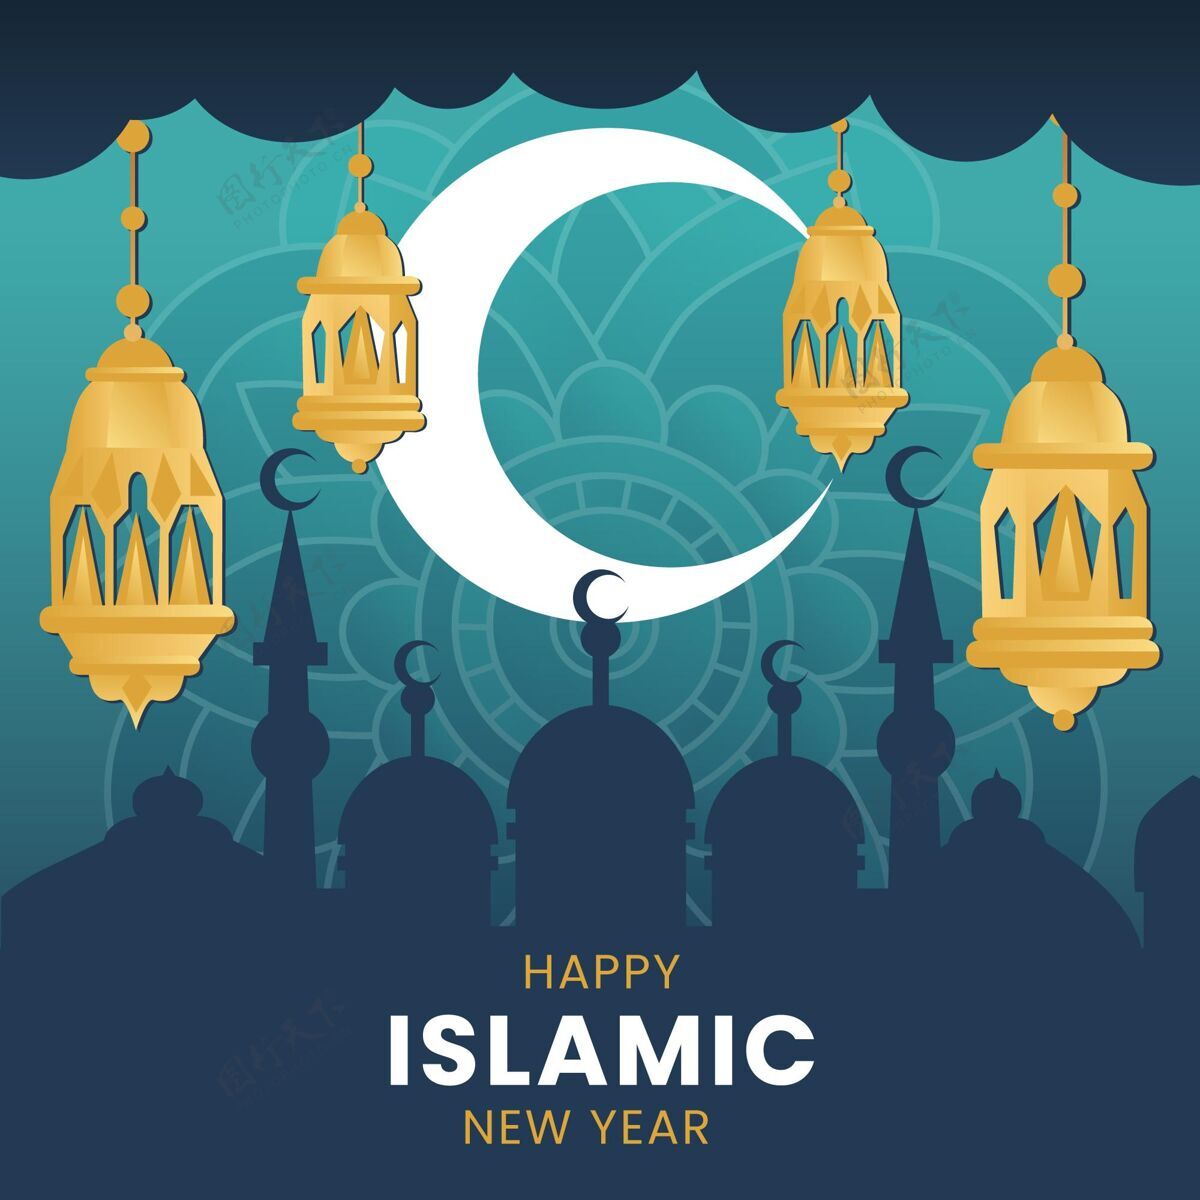 伊斯兰新年快乐新年插画回历新年阿拉伯语新年伊斯兰新年